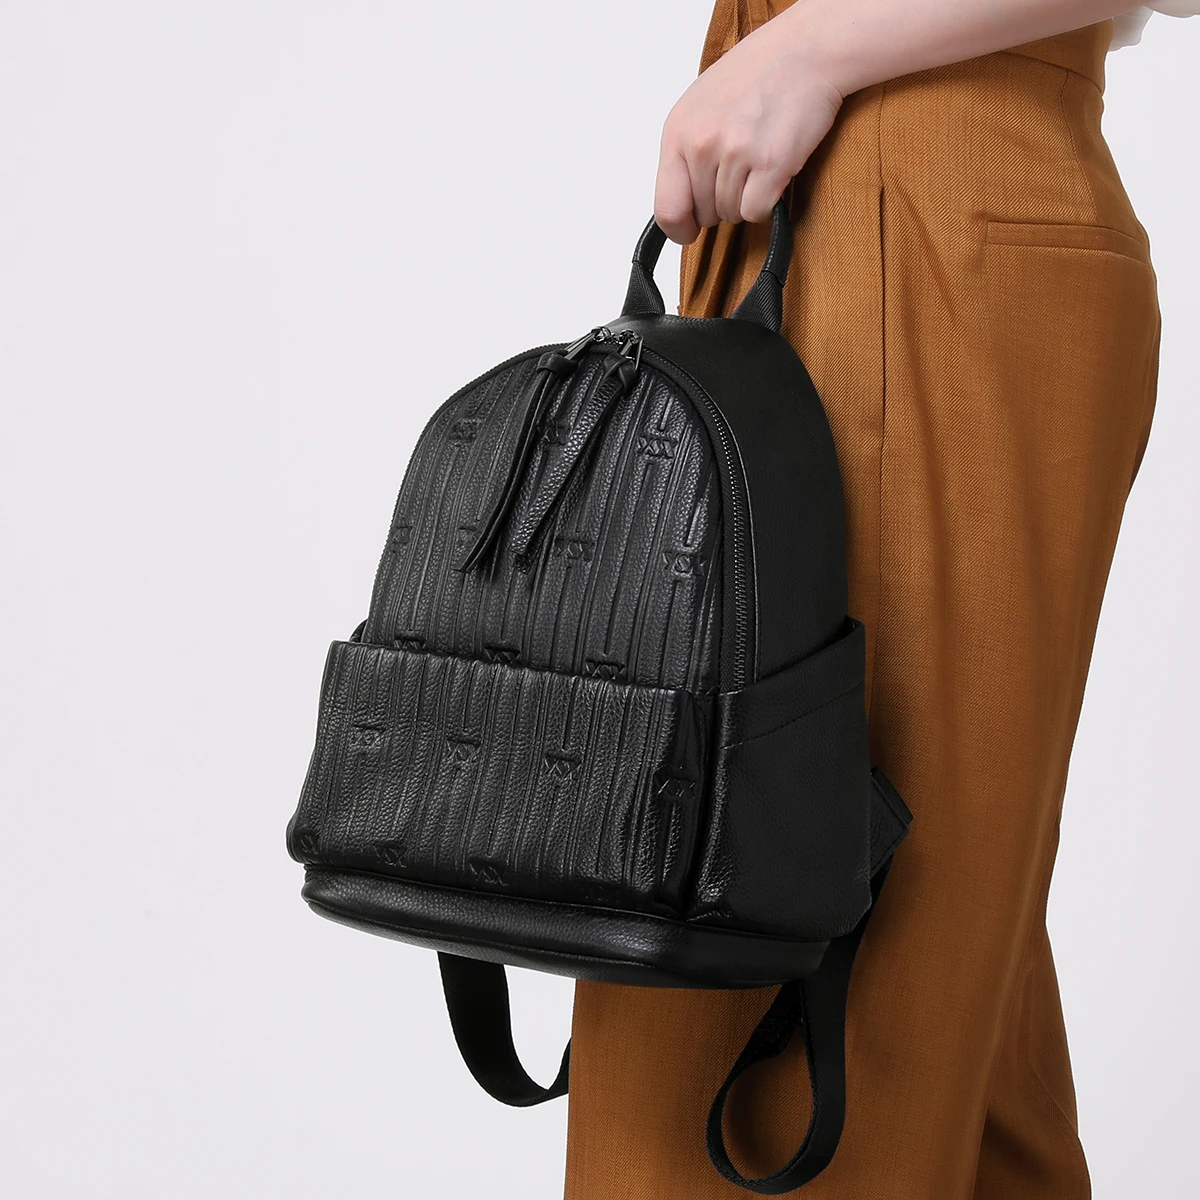 Limited ZOOLER 100% Skin Genuine Leather Backpag Women's Bag  Fashion Large Capacity Shoulder Backpack Schoolgirl Travel #SC1289